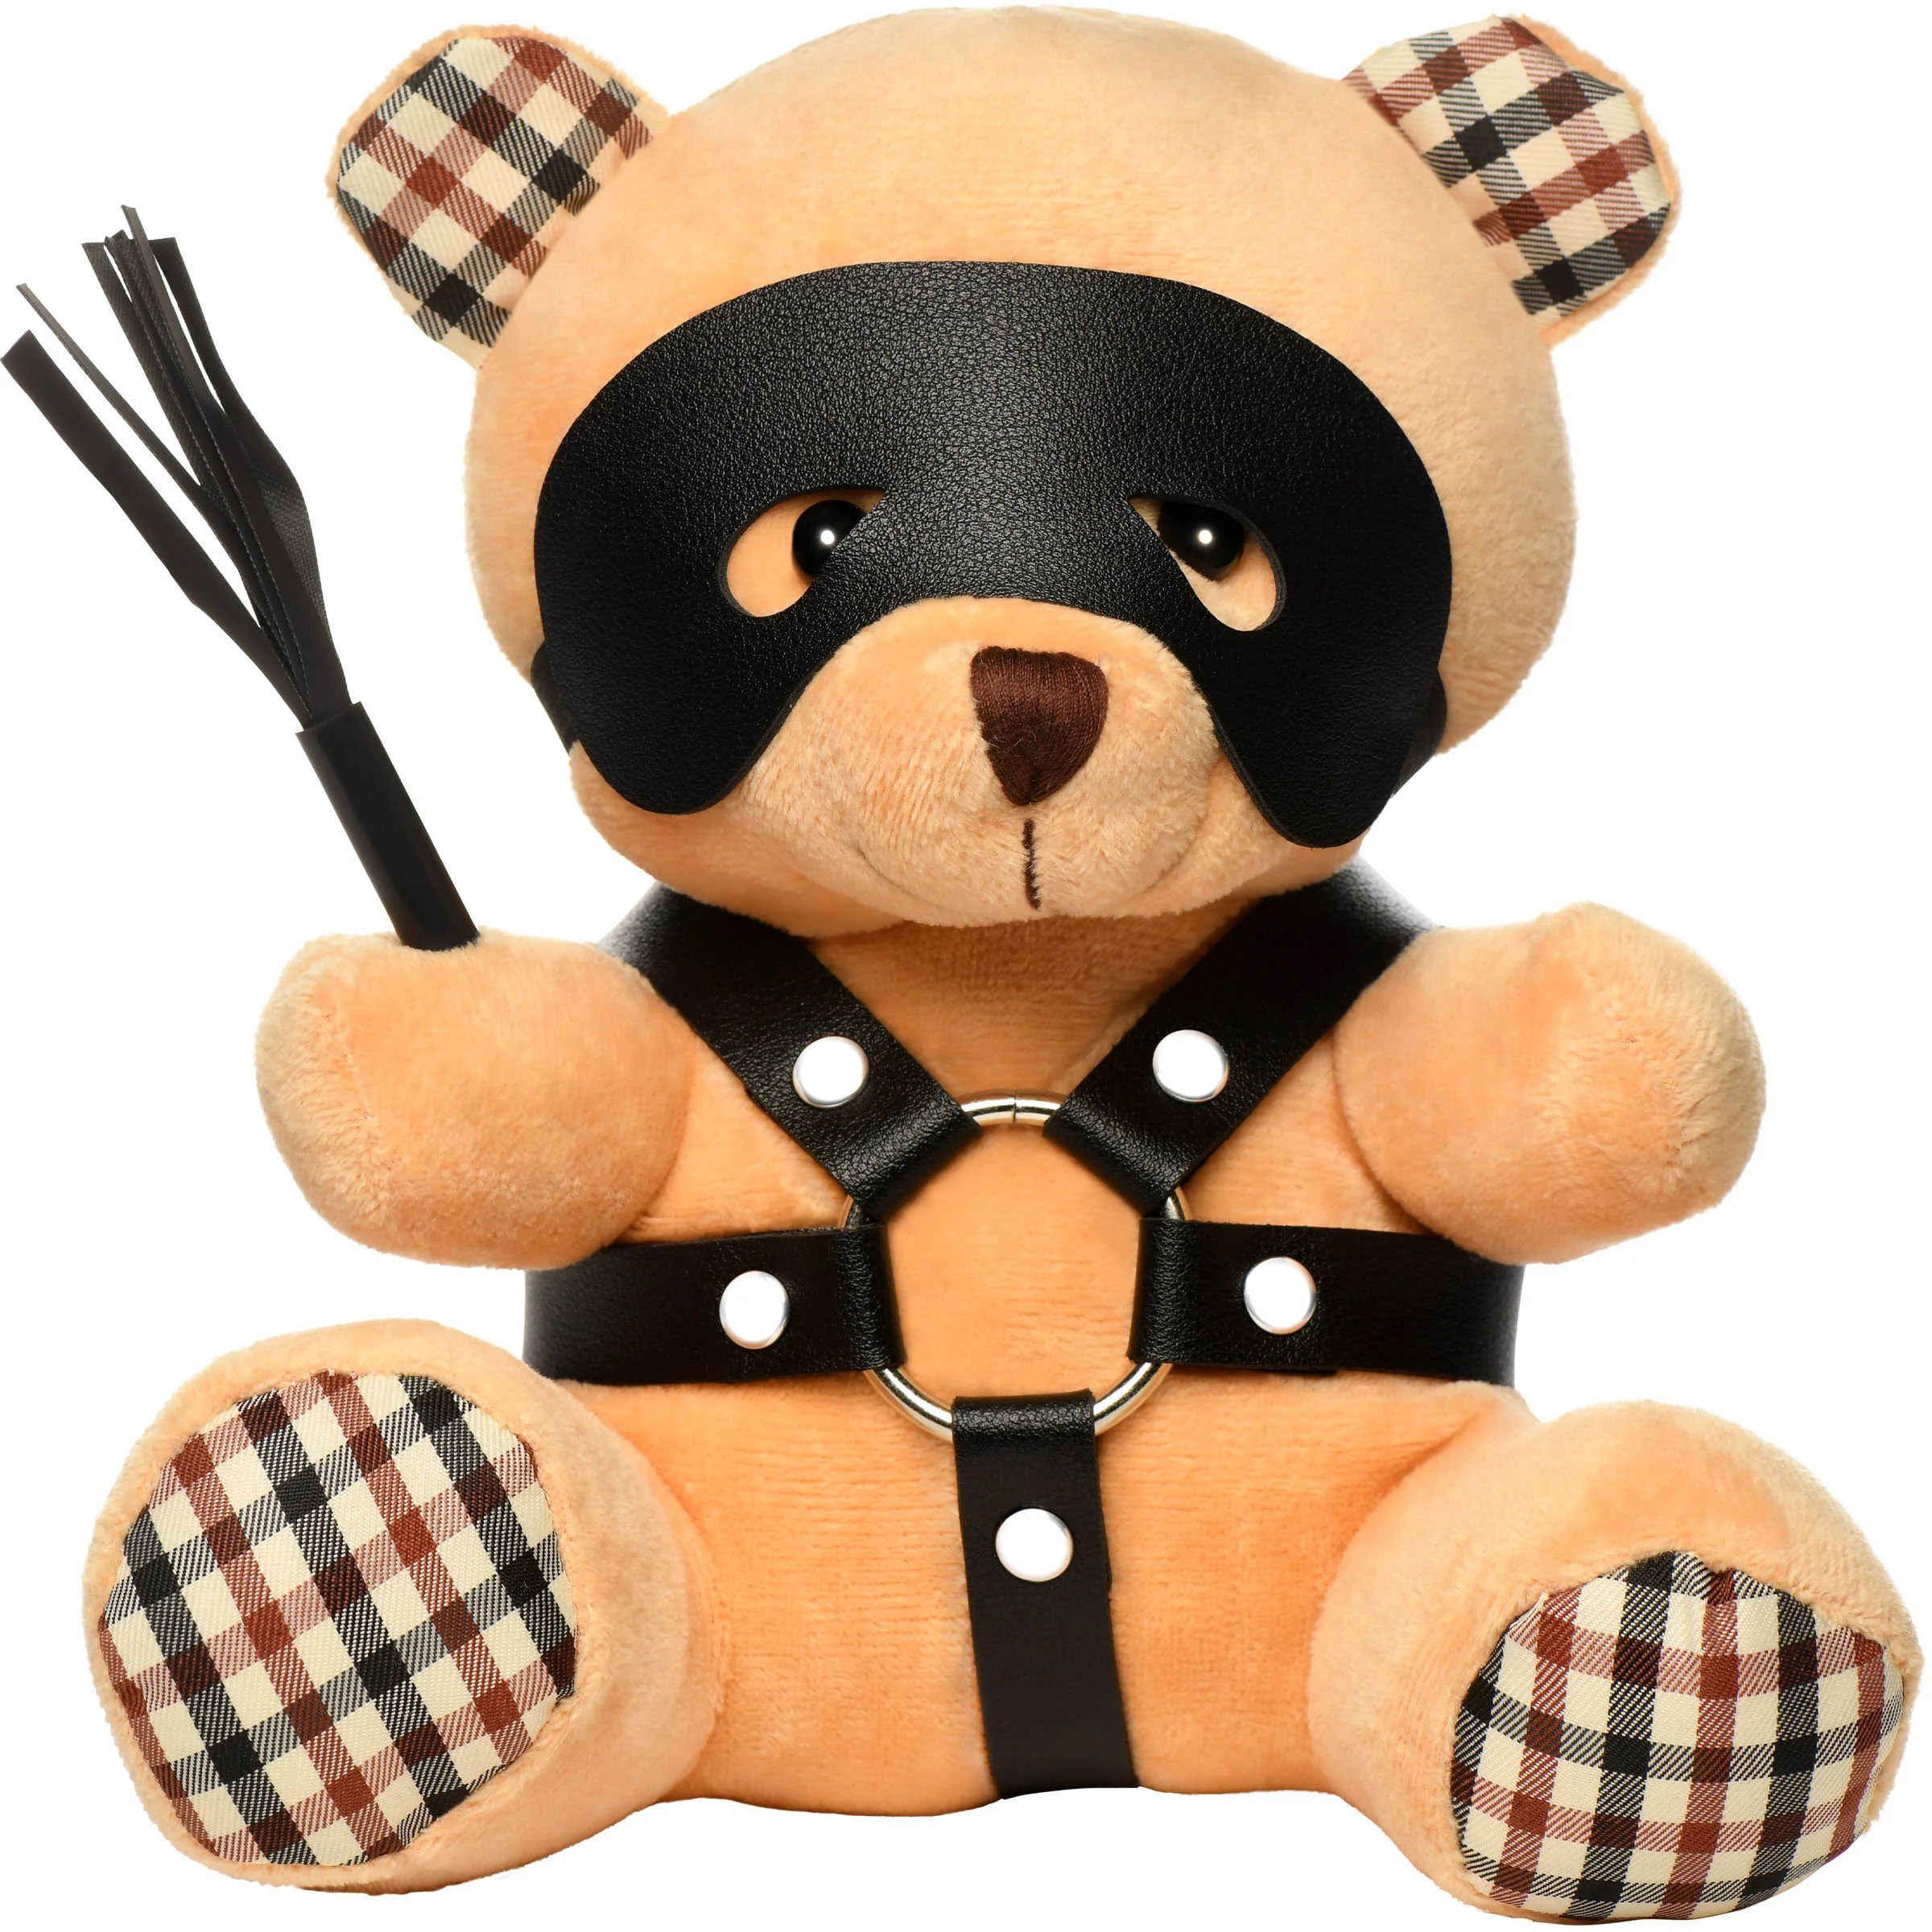 BDSM Teddy Bear Plush-6